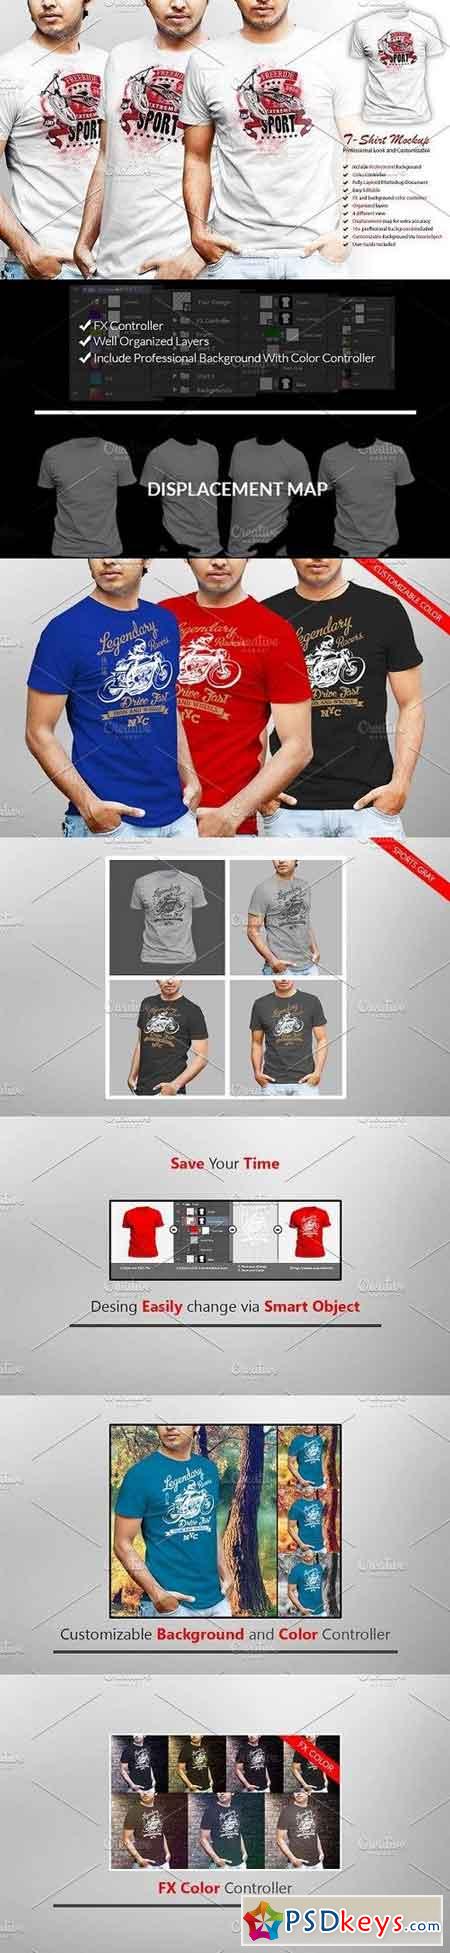 Professional Tshirt Mockup 1264526